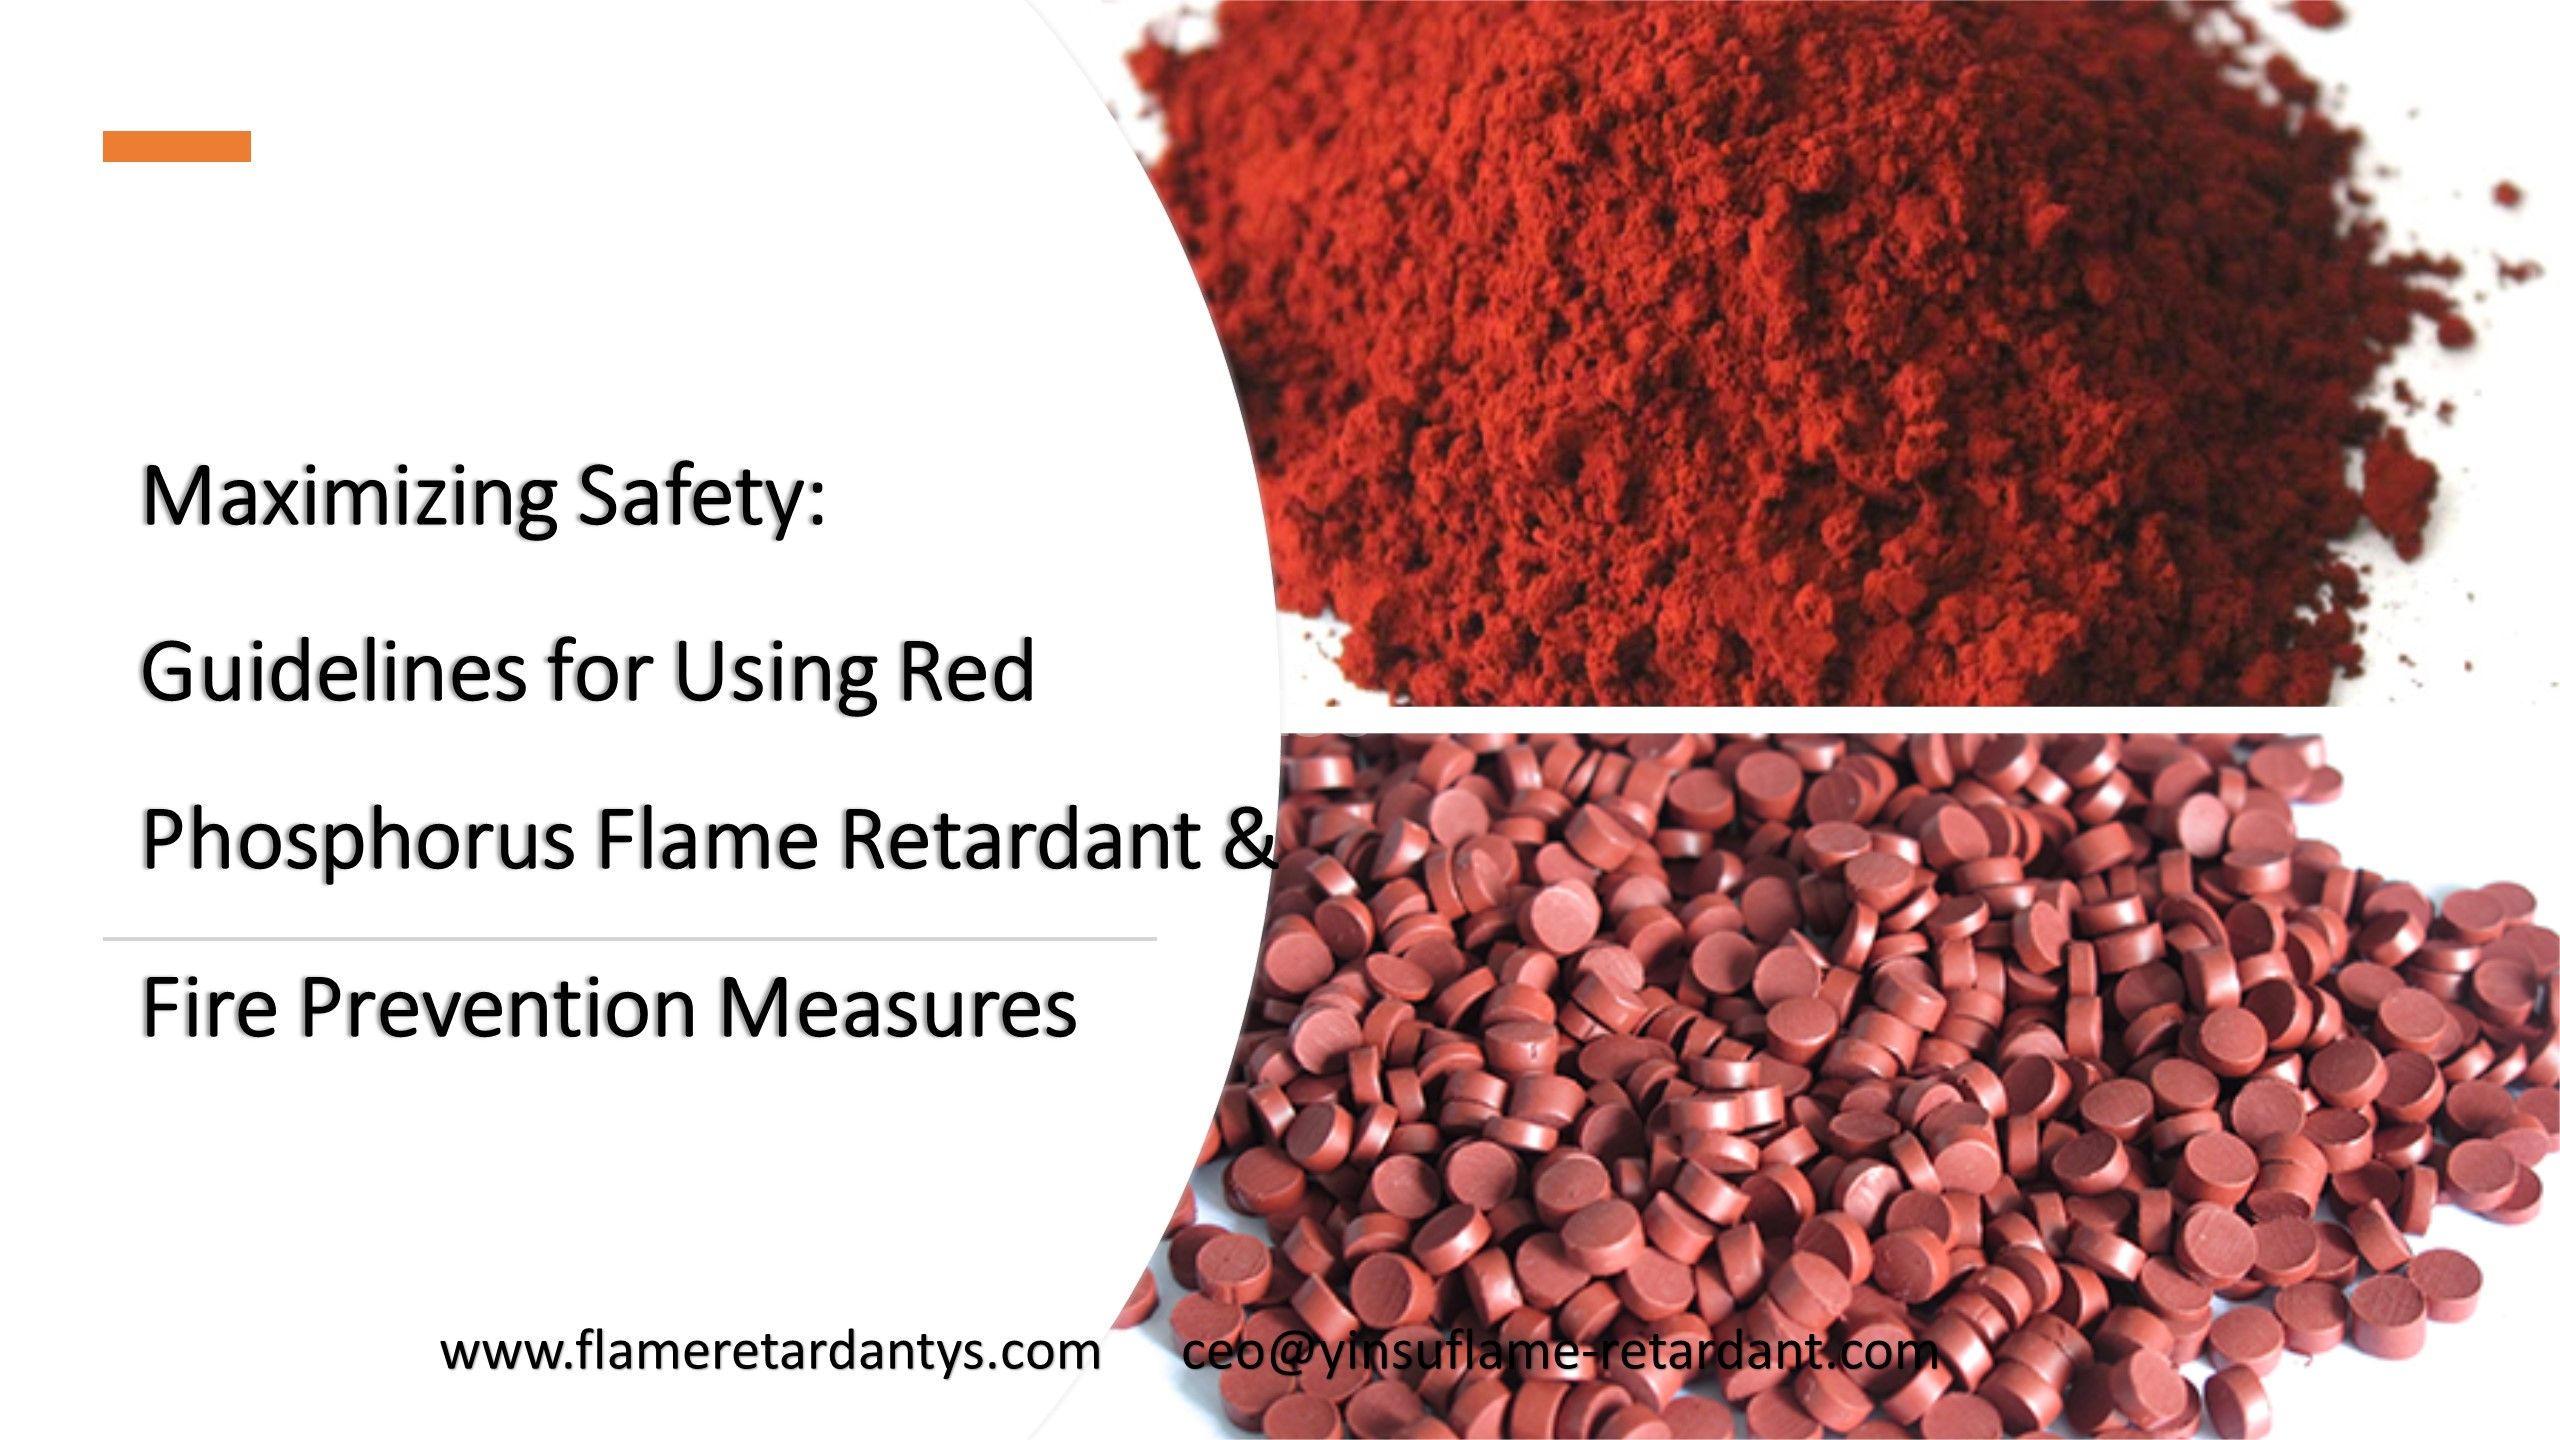 تعظيم السلامة: إرشادات لاستخدام مثبطات اللهب بالفوسفور الأحمر وتدابير الوقاية من الحرائق